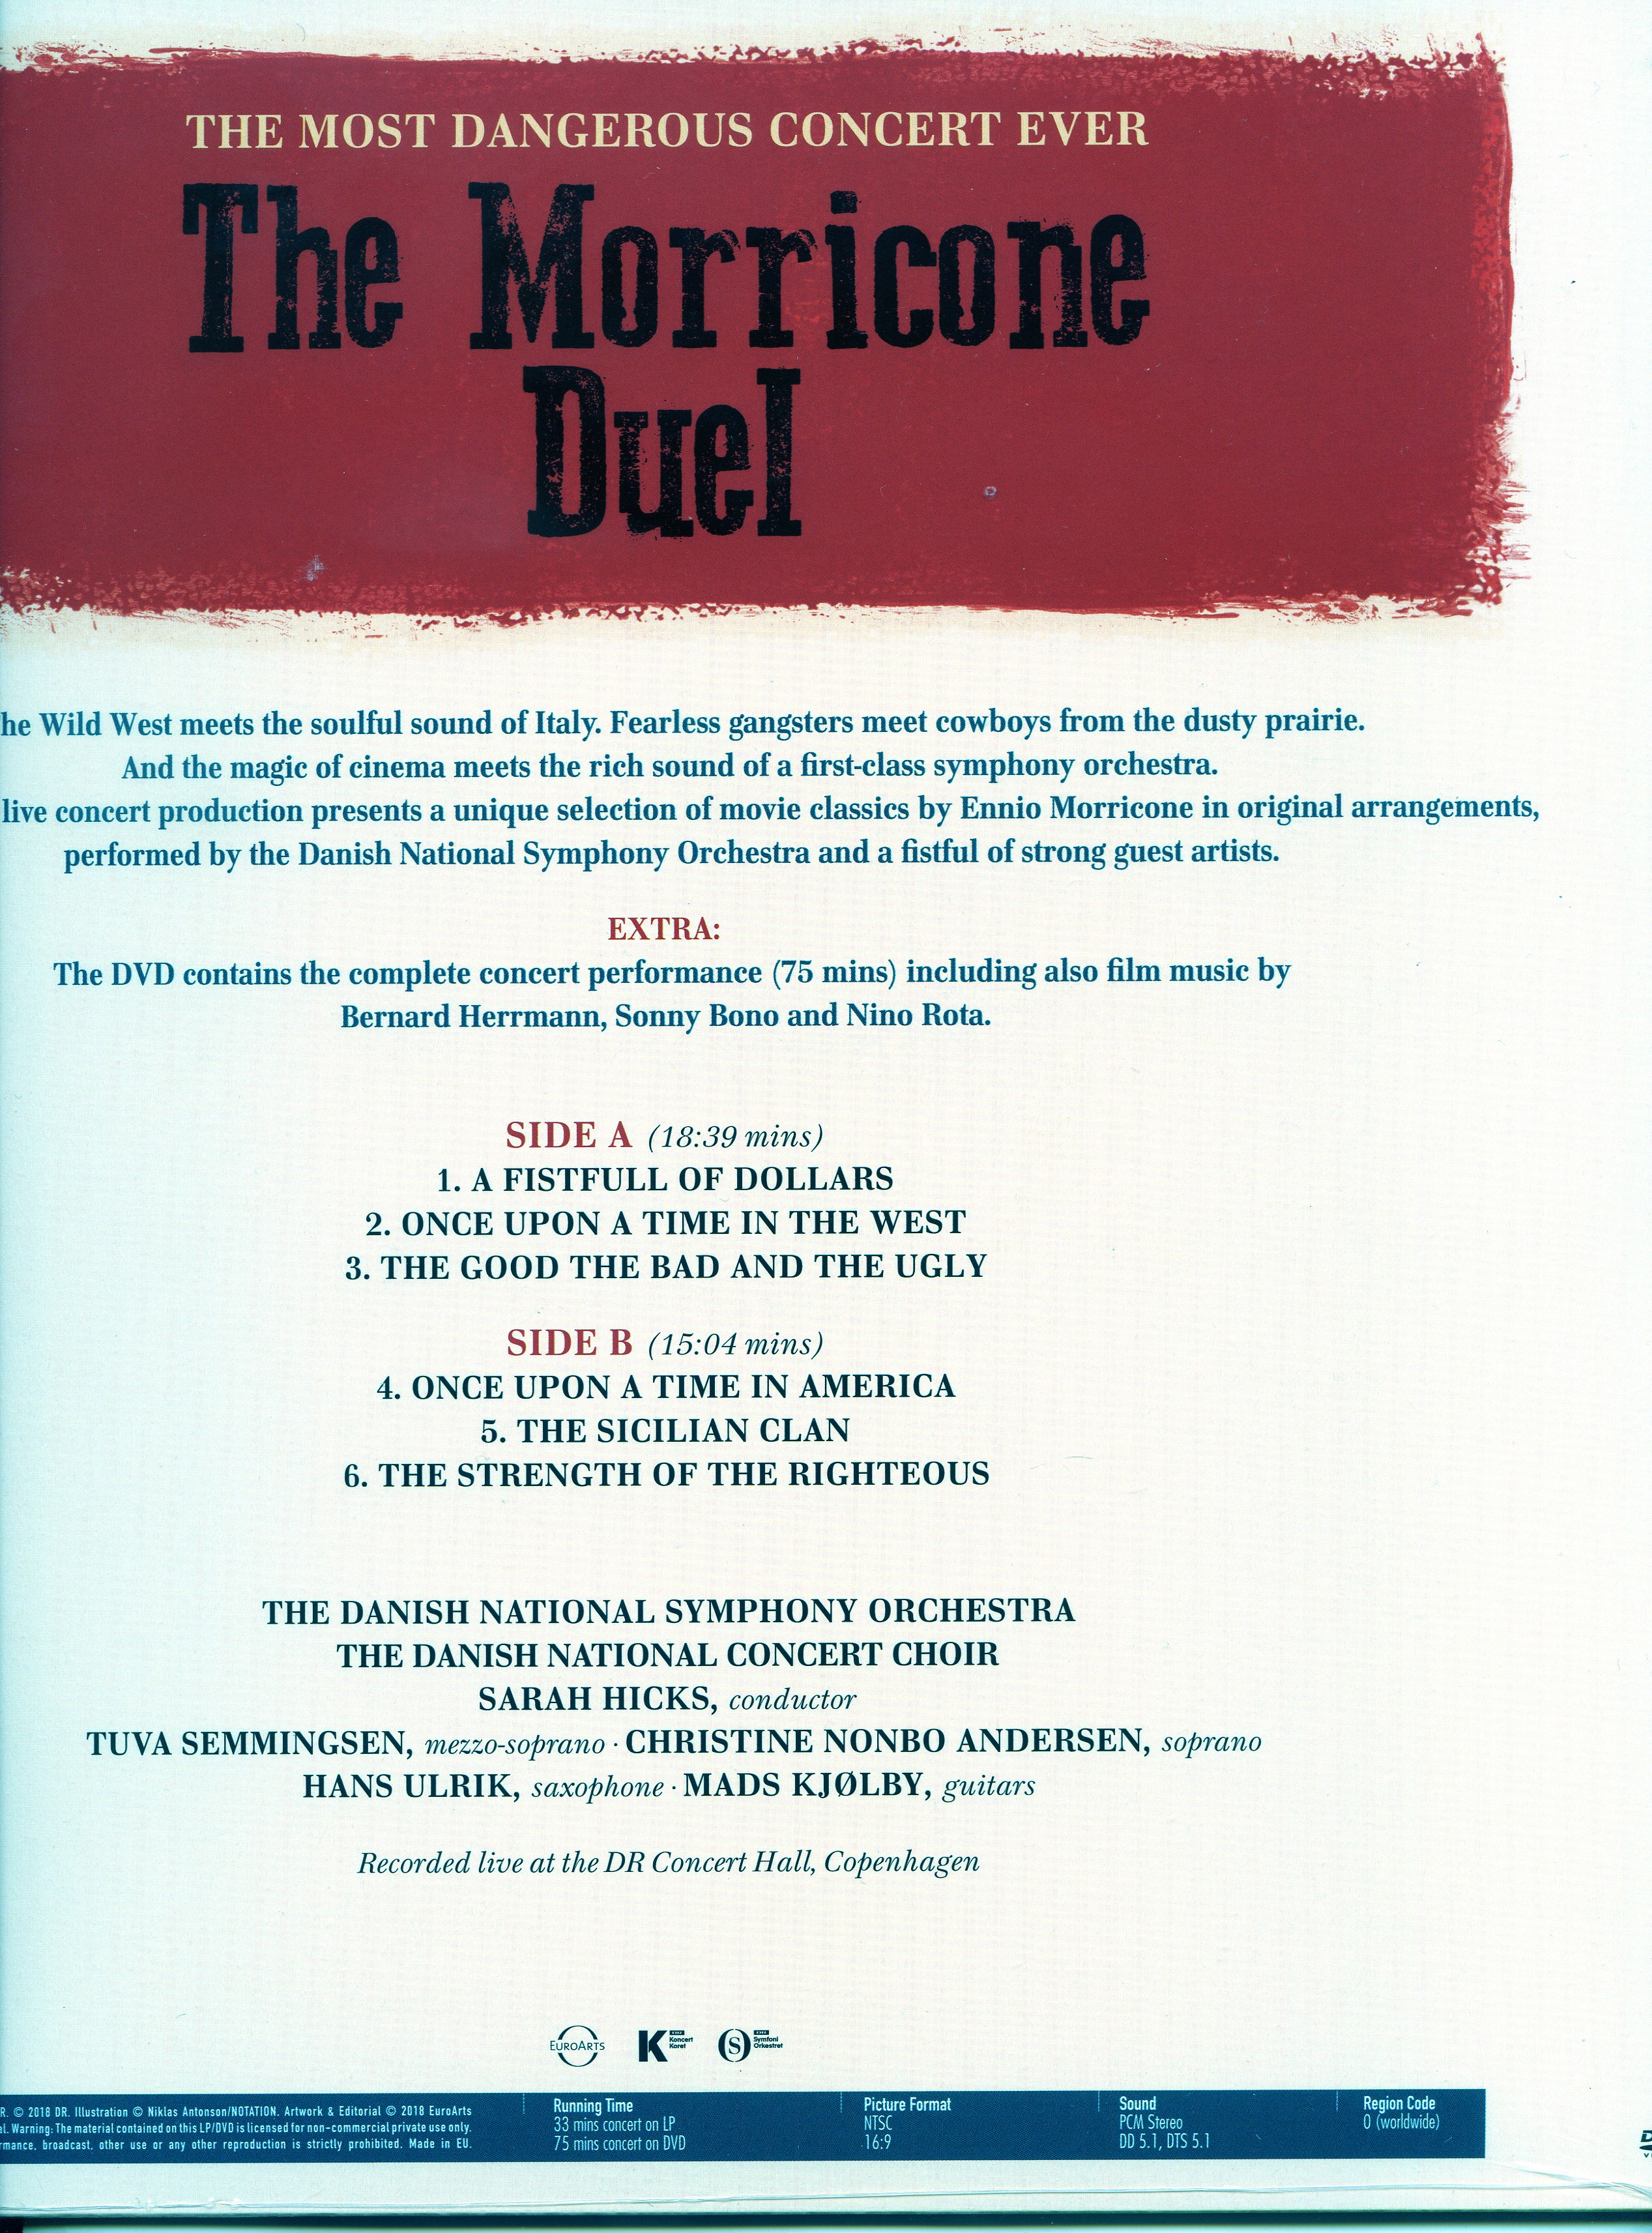 엔니오 모리꼬네 영화음악 콘서트 '가장 위험한 콘서트' (The Morricone Duel - The Most Dangerous Concert Ever) [LP+DVD]